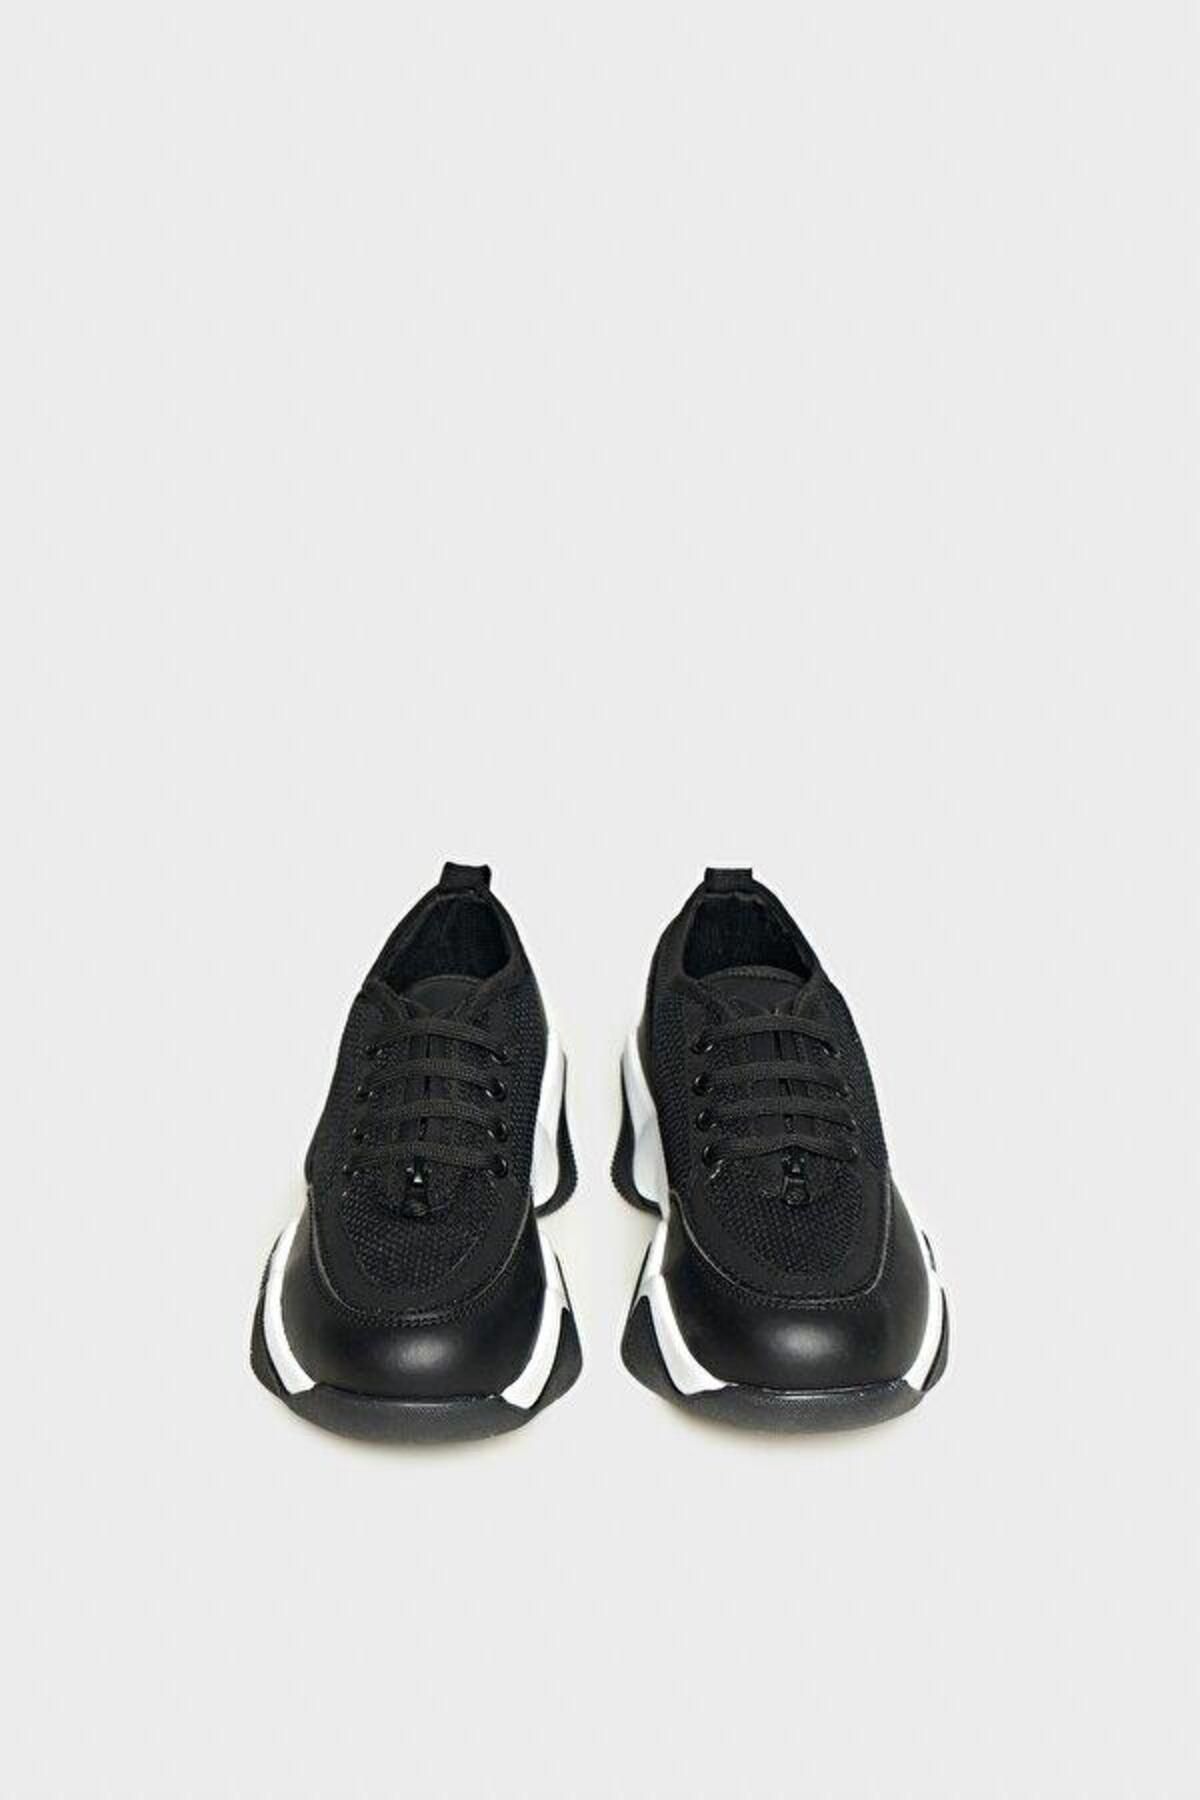 Nebbati BG Store Erkek Çocuk Siyah Ayakkabı